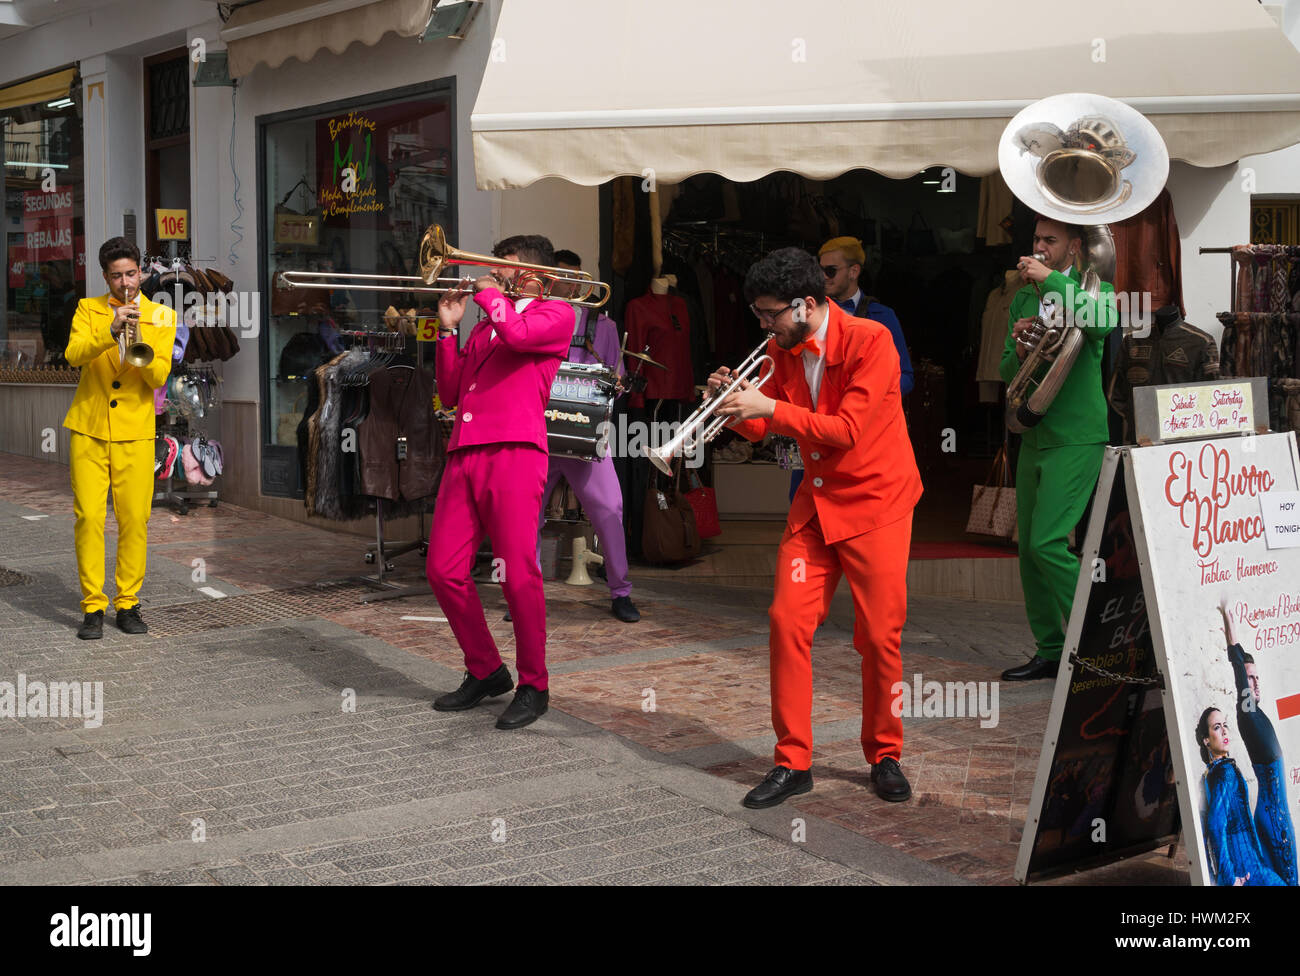 Carnaval 2017 de Nerja, street jazz musiciens, Andalousie, Espagne Banque D'Images